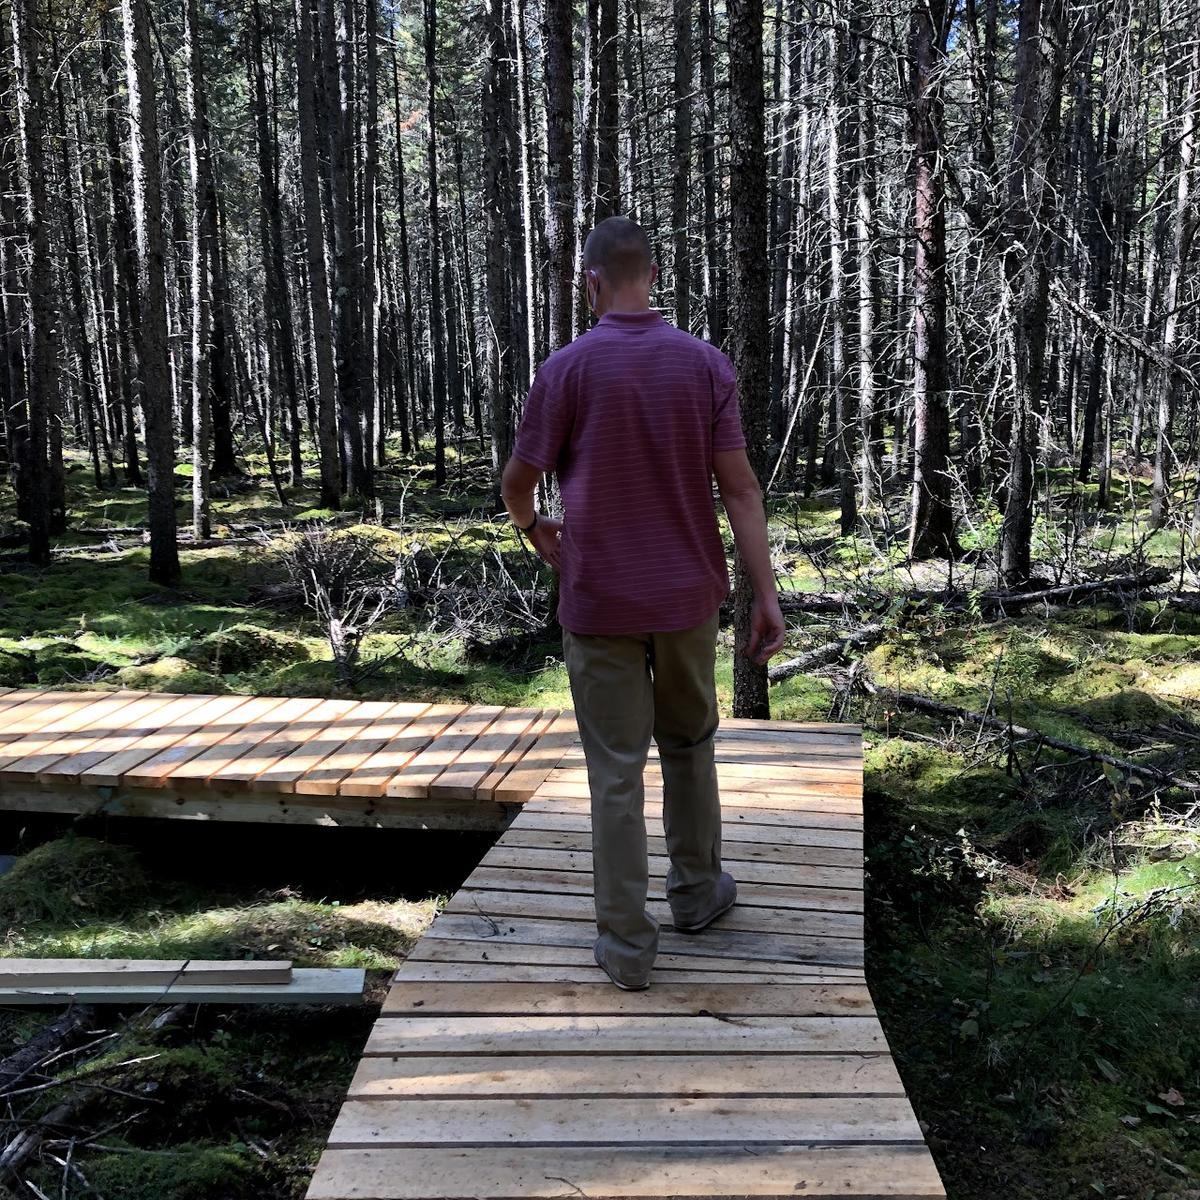 Man walking on boardwalk in forest